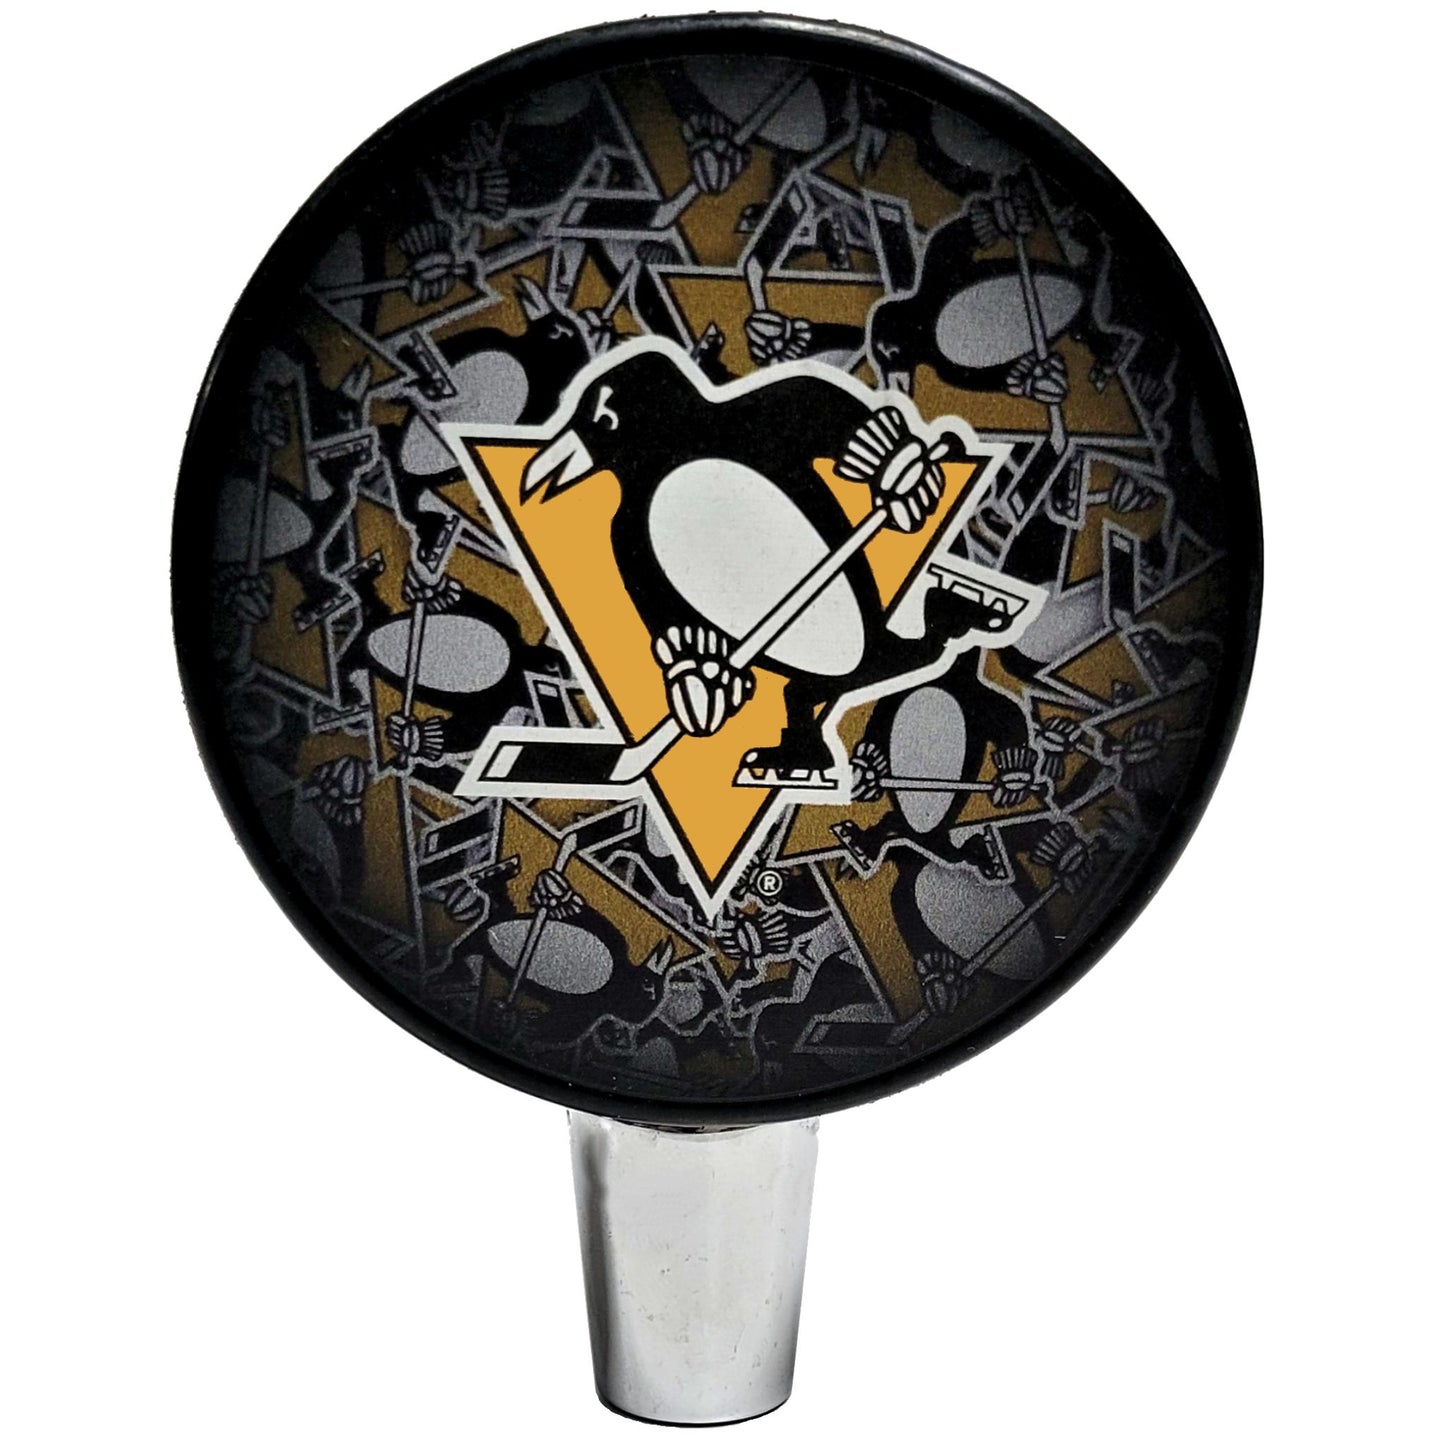 Pittsburgh Penguins Clone Series Hockey Puck Beer Tap Handle